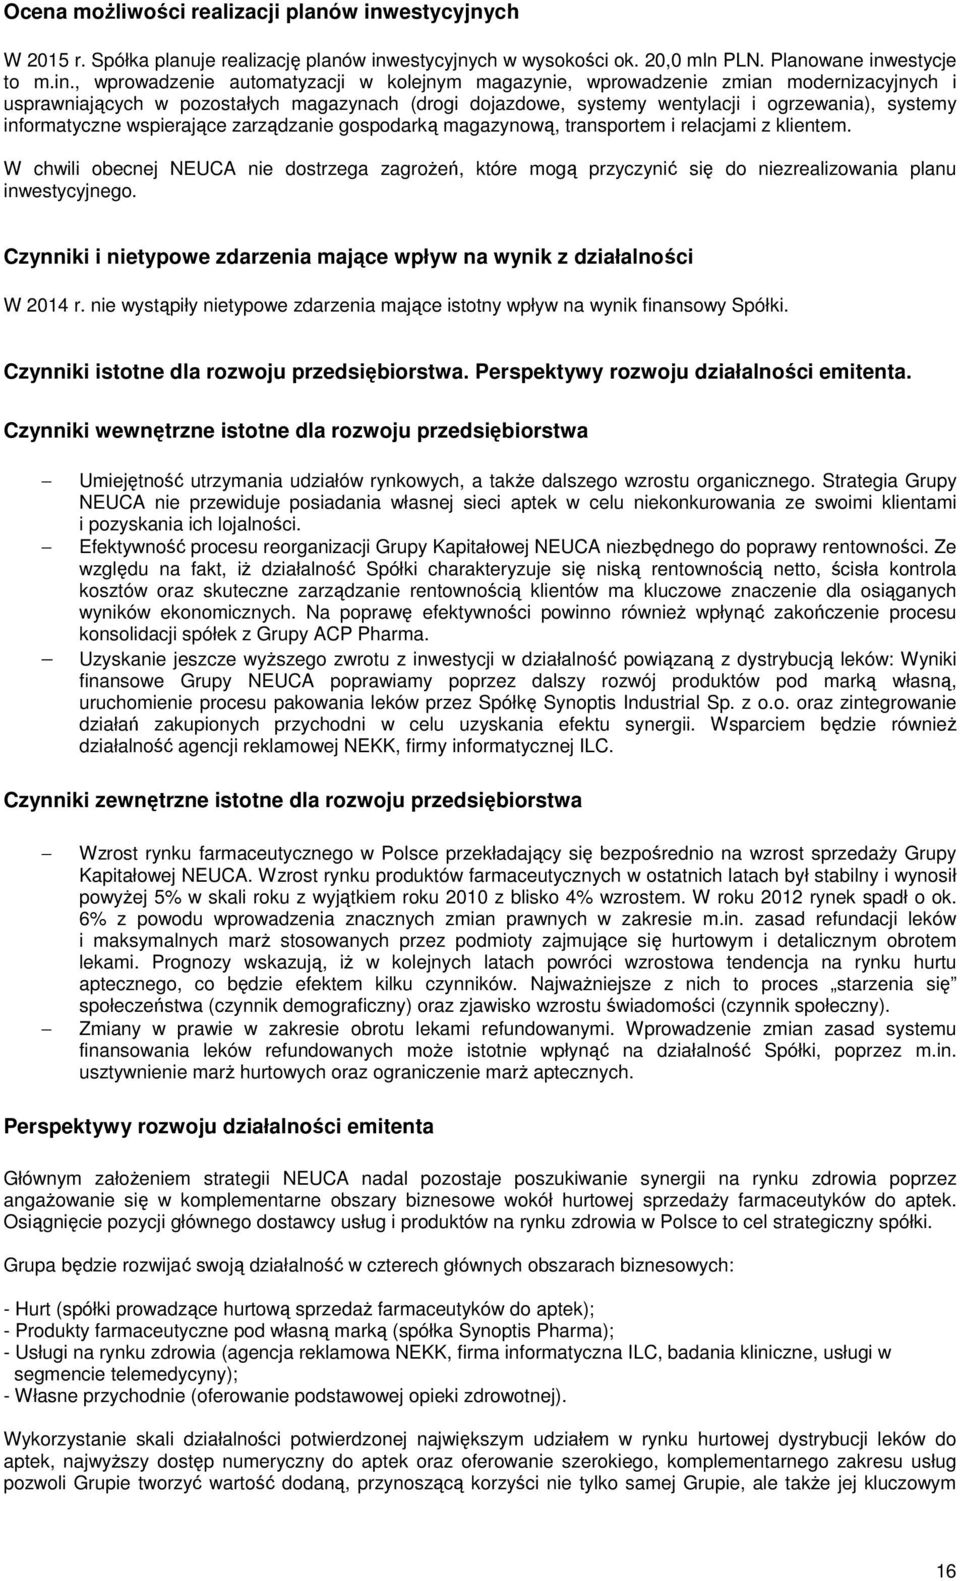 estycyjnych w wysokości ok. 20,0 mln PLN. Planowane inw